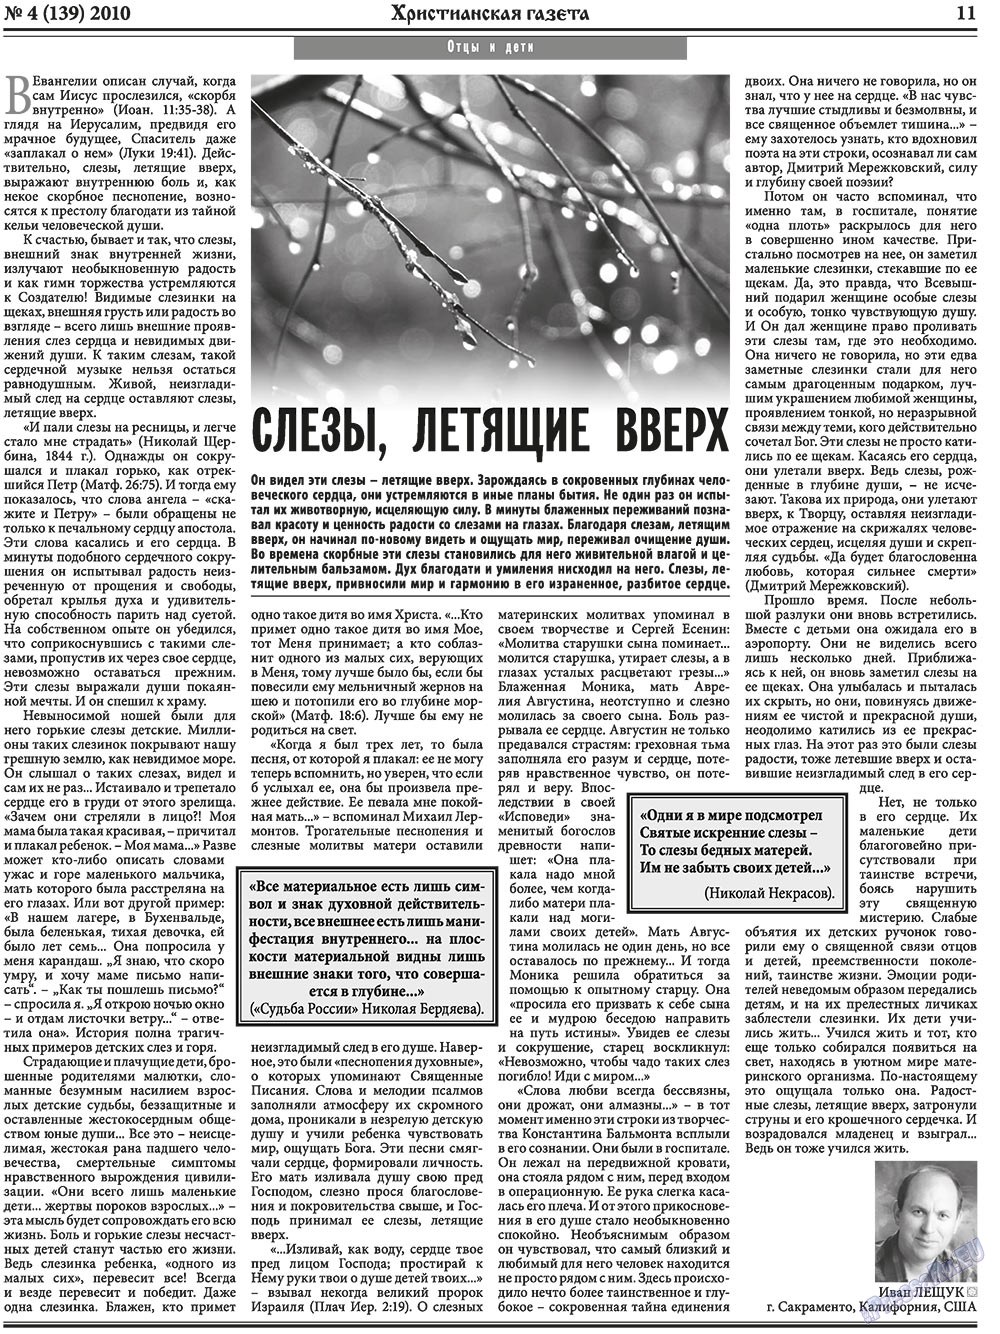 Христианская газета, газета. 2010 №4 стр.11